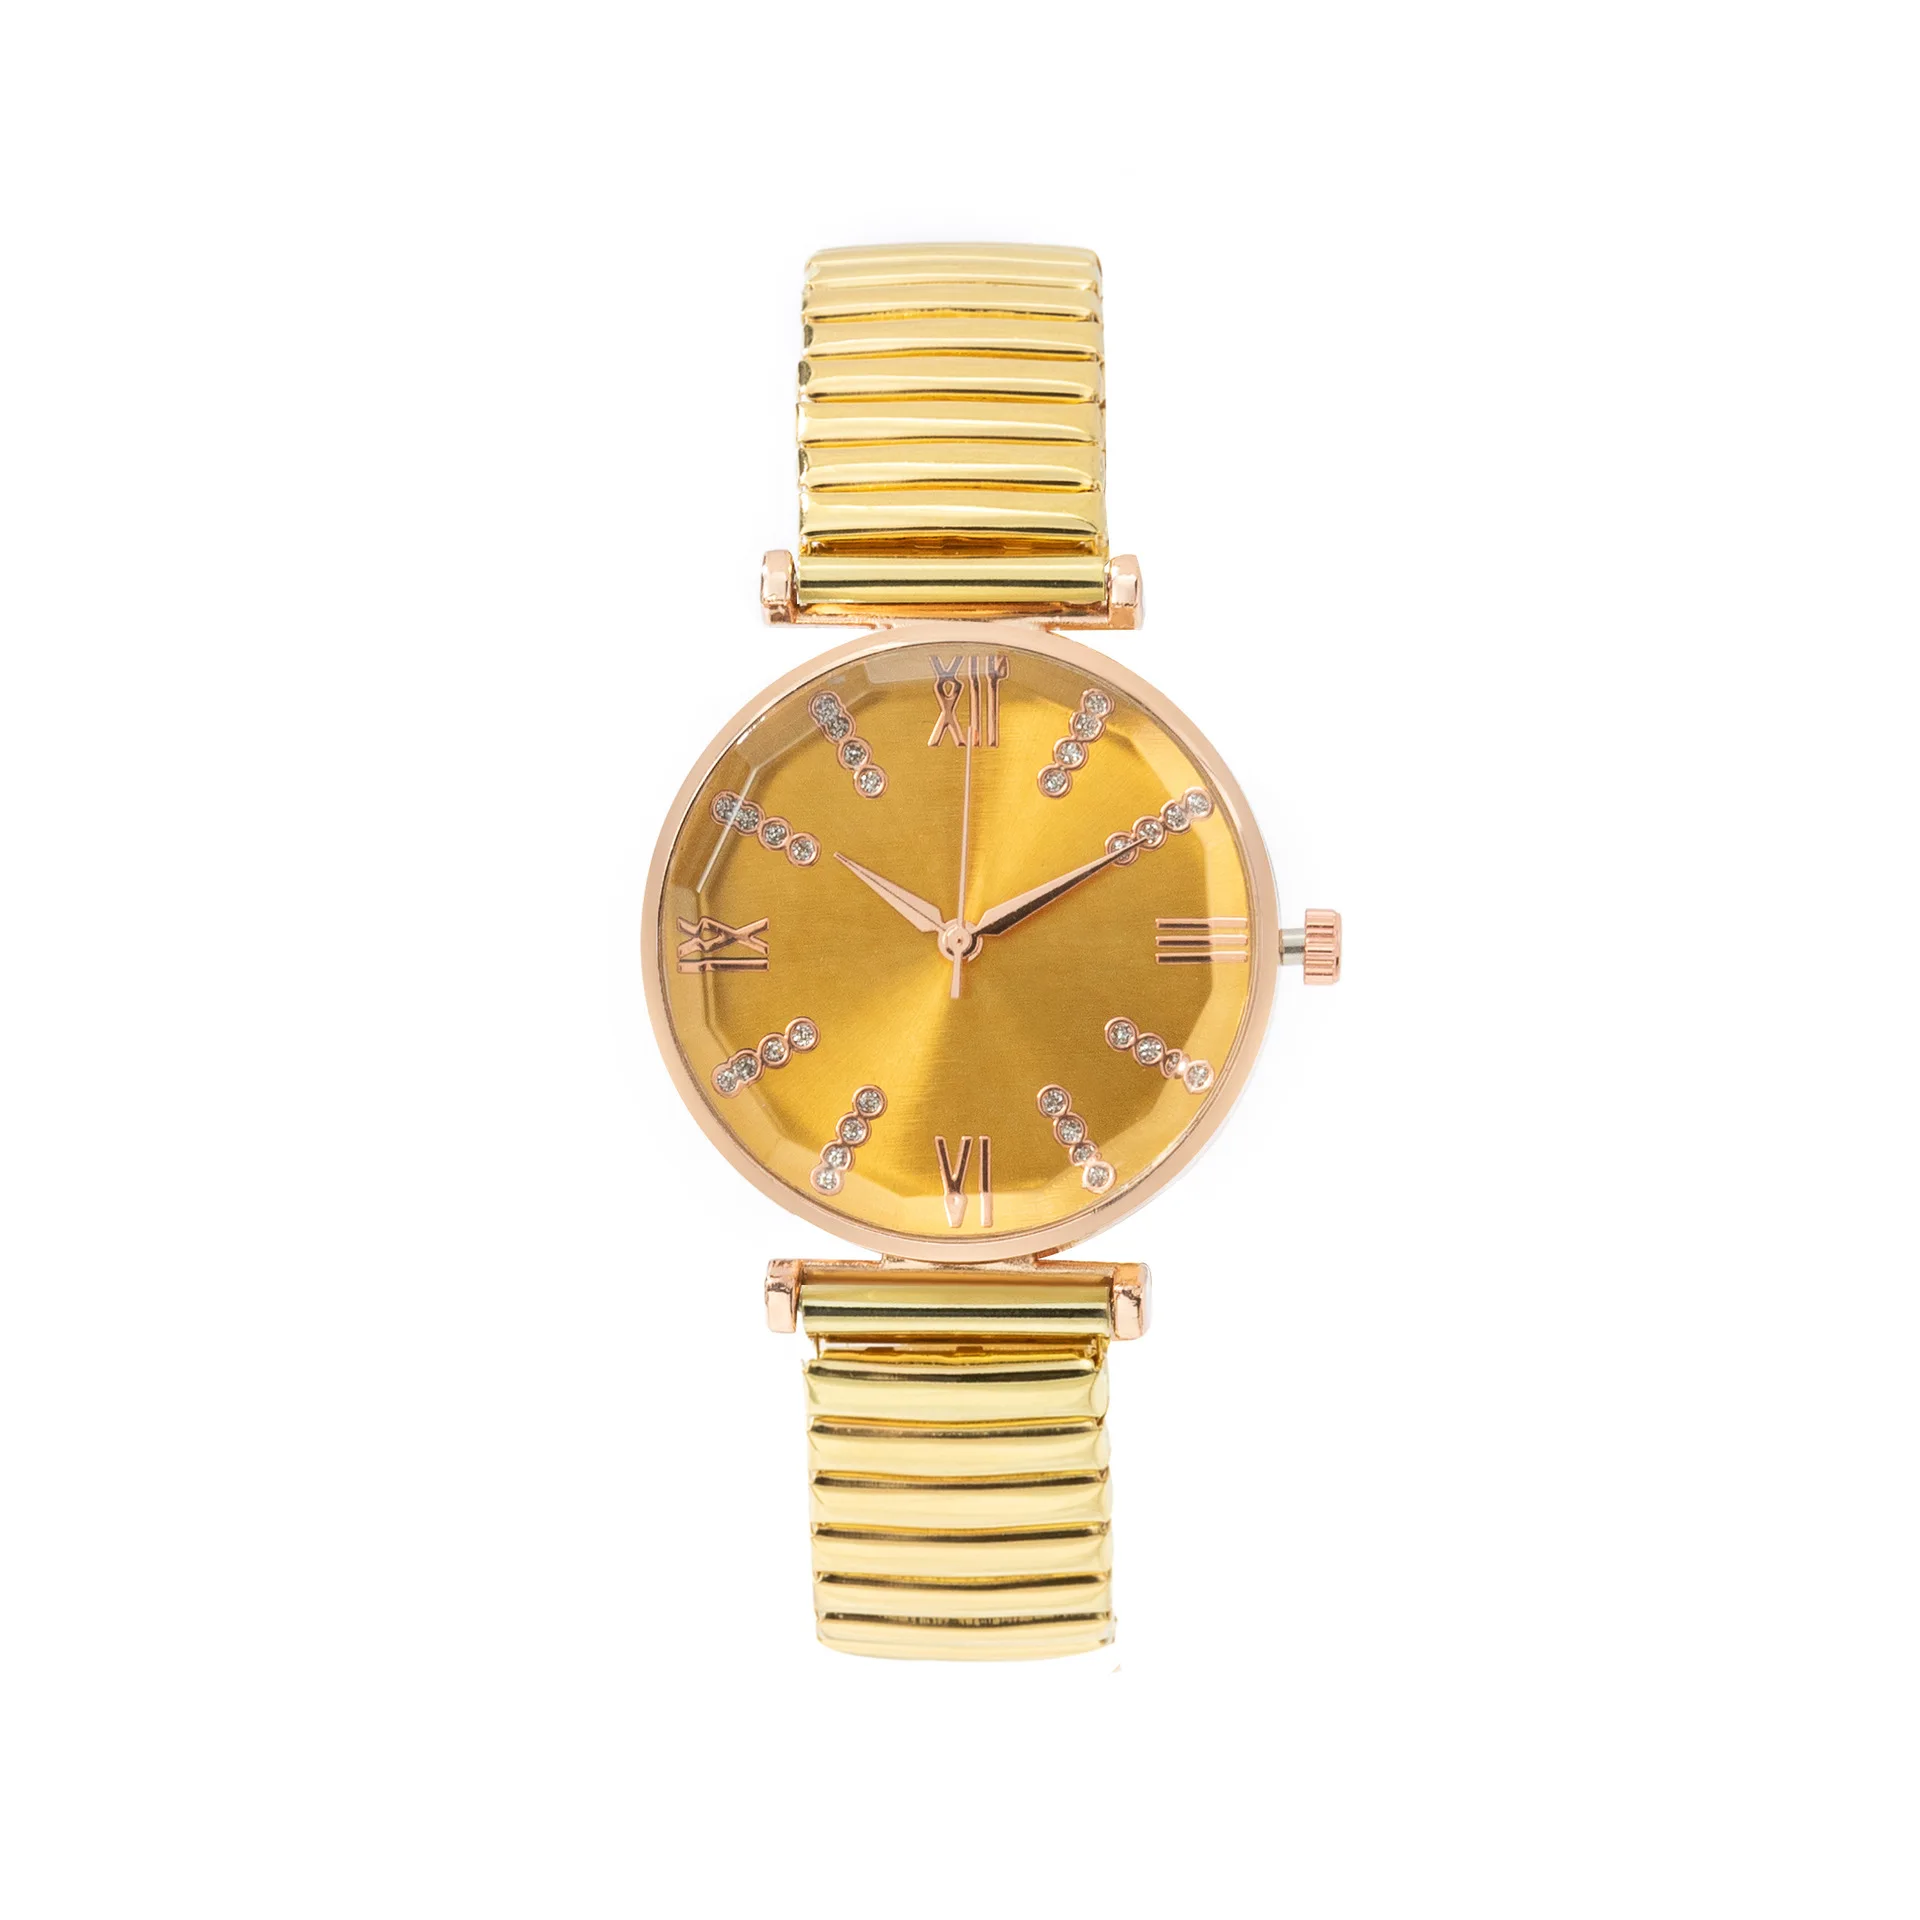 GUC-003 Висококачествени луксозни дамски часовници с диаманти, от стоманена лента, която не ръждясва и не избледнява, безплатна доставка